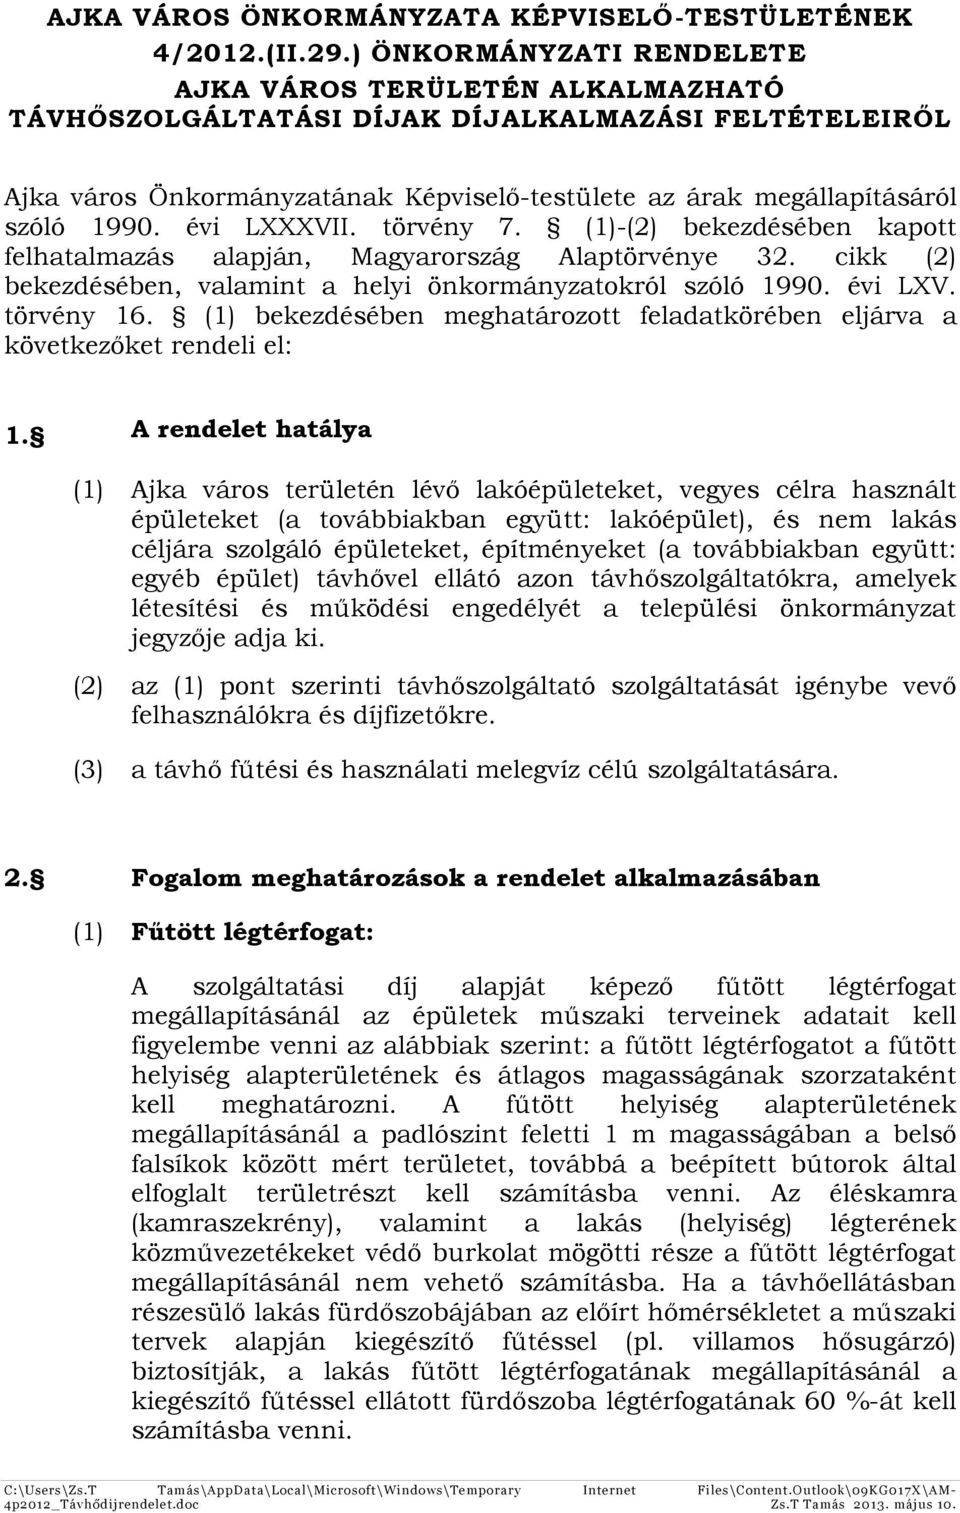 évi LXXXVII. törvény 7. (1)-(2) bekezdésében kapott felhatalmazás alapján, Magyarország Alaptörvénye 32. cikk (2) bekezdésében, valamint a helyi önkormányzatokról szóló 1990. évi LXV. törvény 16.